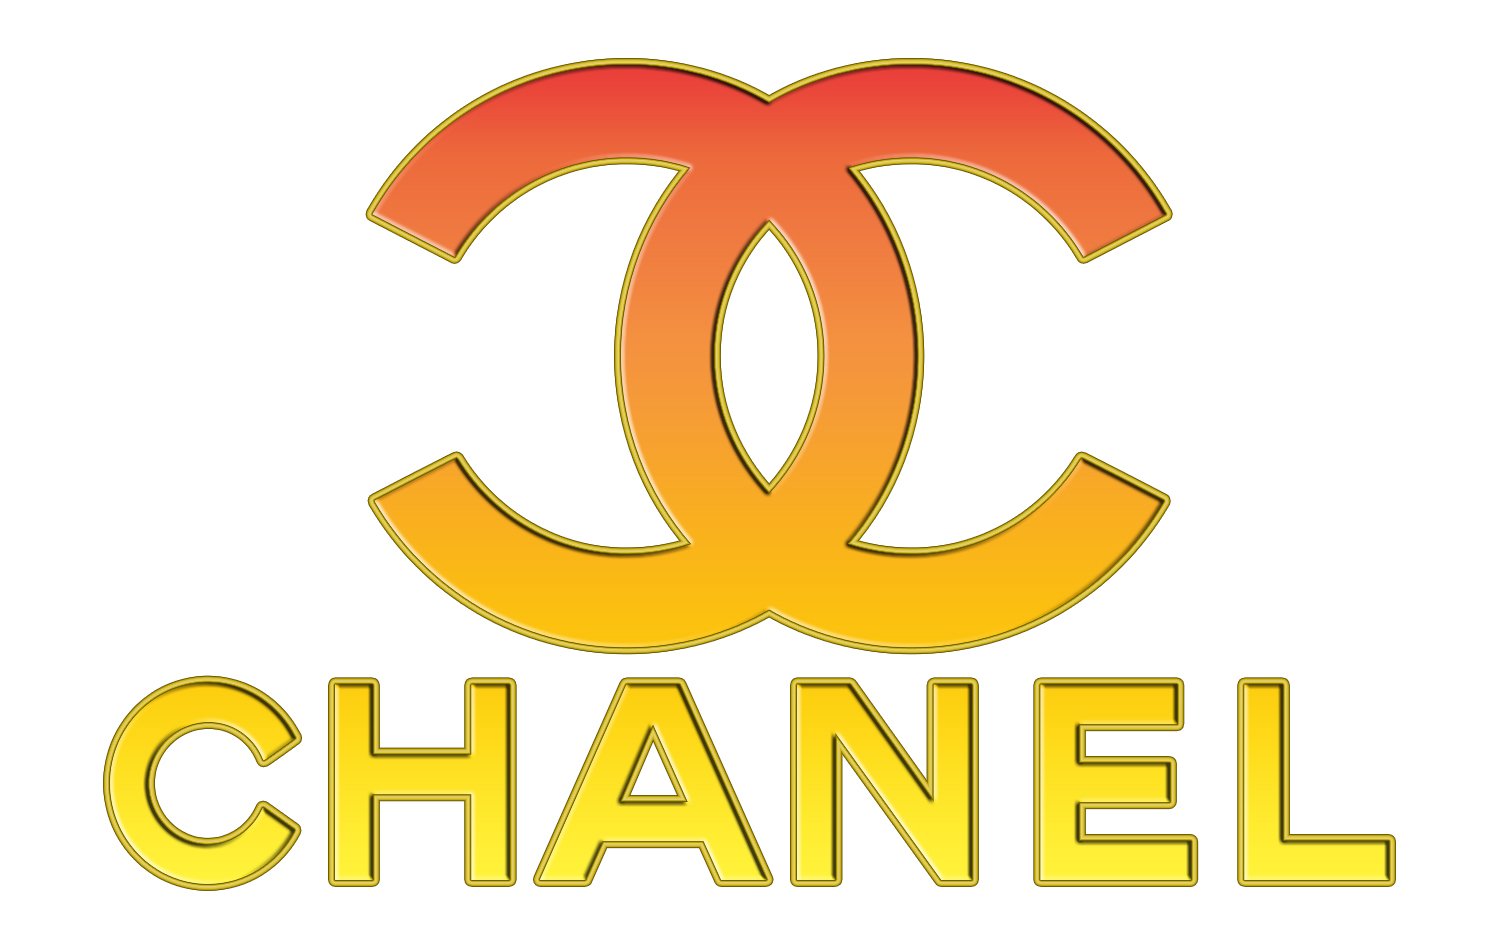 chia-s-h-n-85-v-chanel-logo-evolution-m-i-nh-t-trieuson5